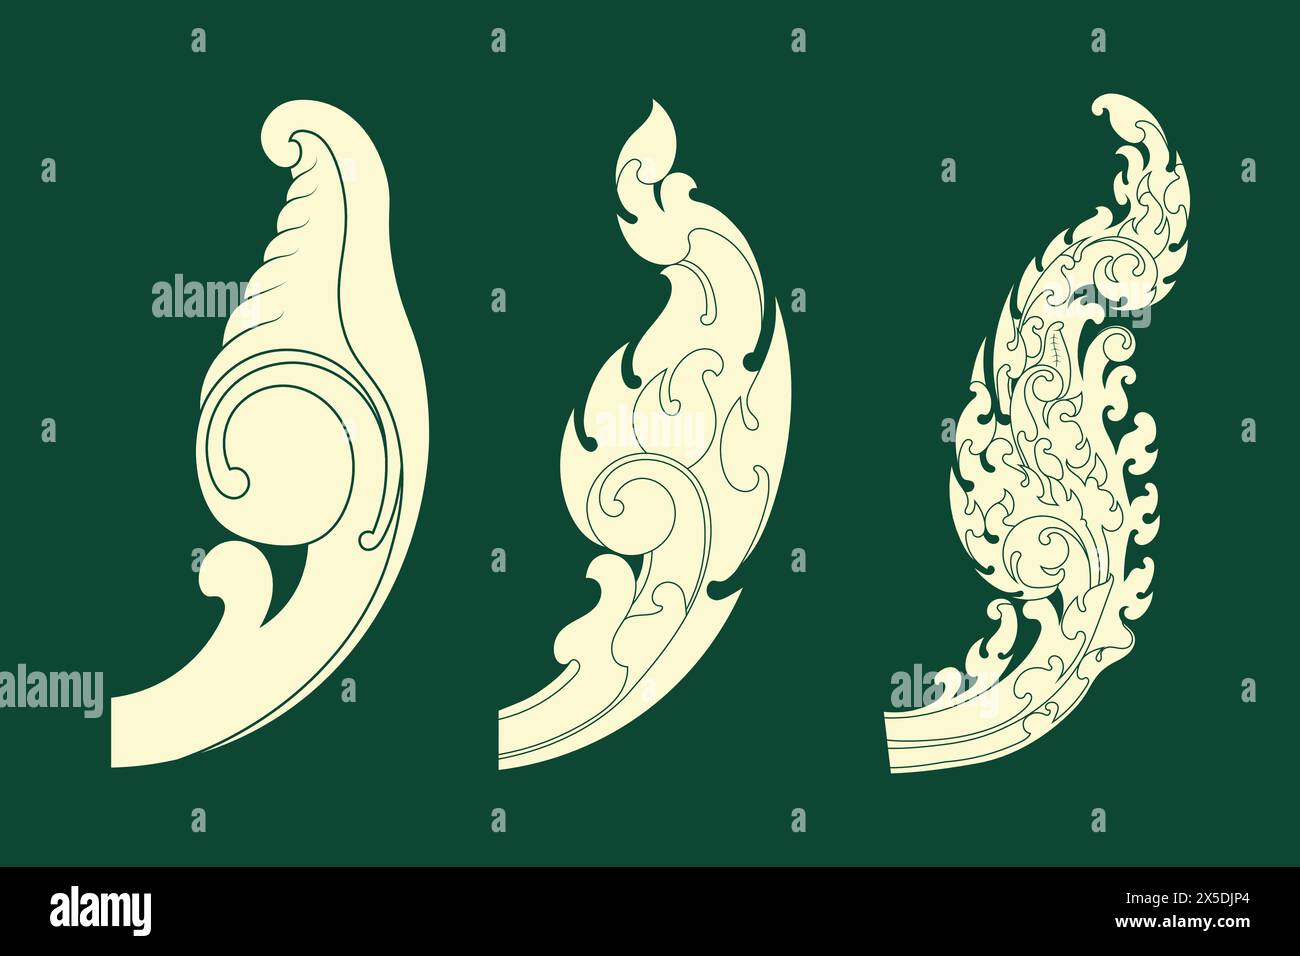 Khmer Art Elements, Vector illustrator design Stock Vector